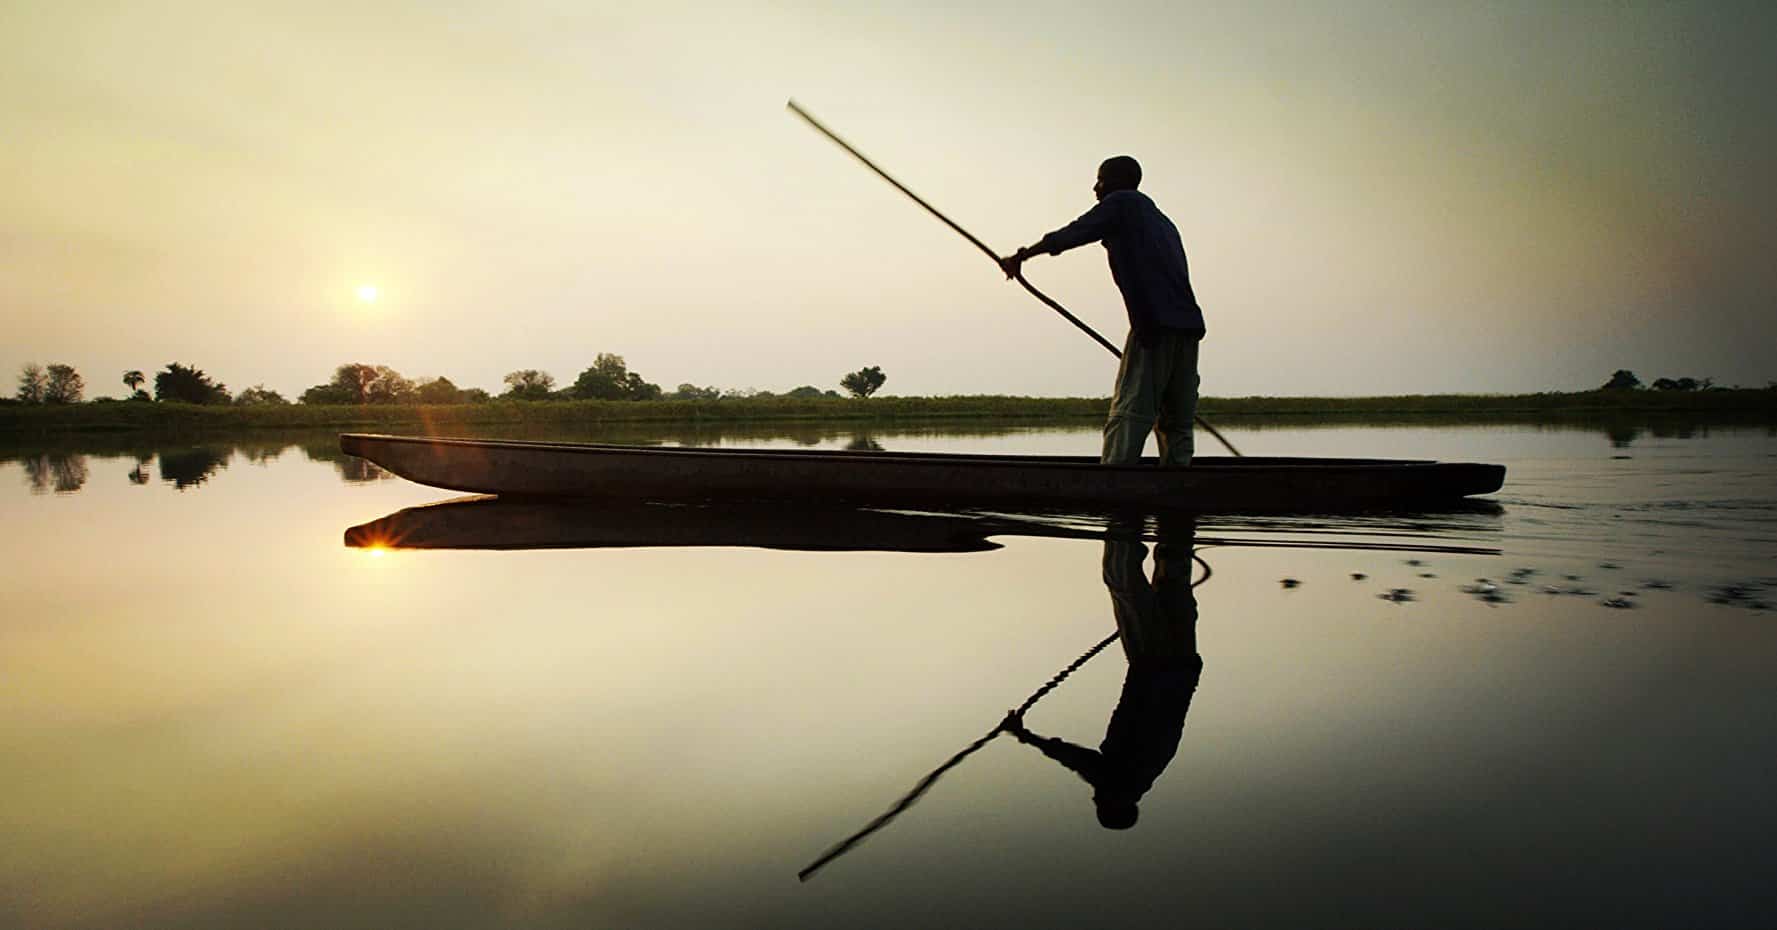 Dove l’essere umano non ha mai messo piede. Viaggiamo perché non possiamo farne a meno e le foreste hanno una magnificenza più profonda di un monumento. “Into the Okavango”, un capolavoro